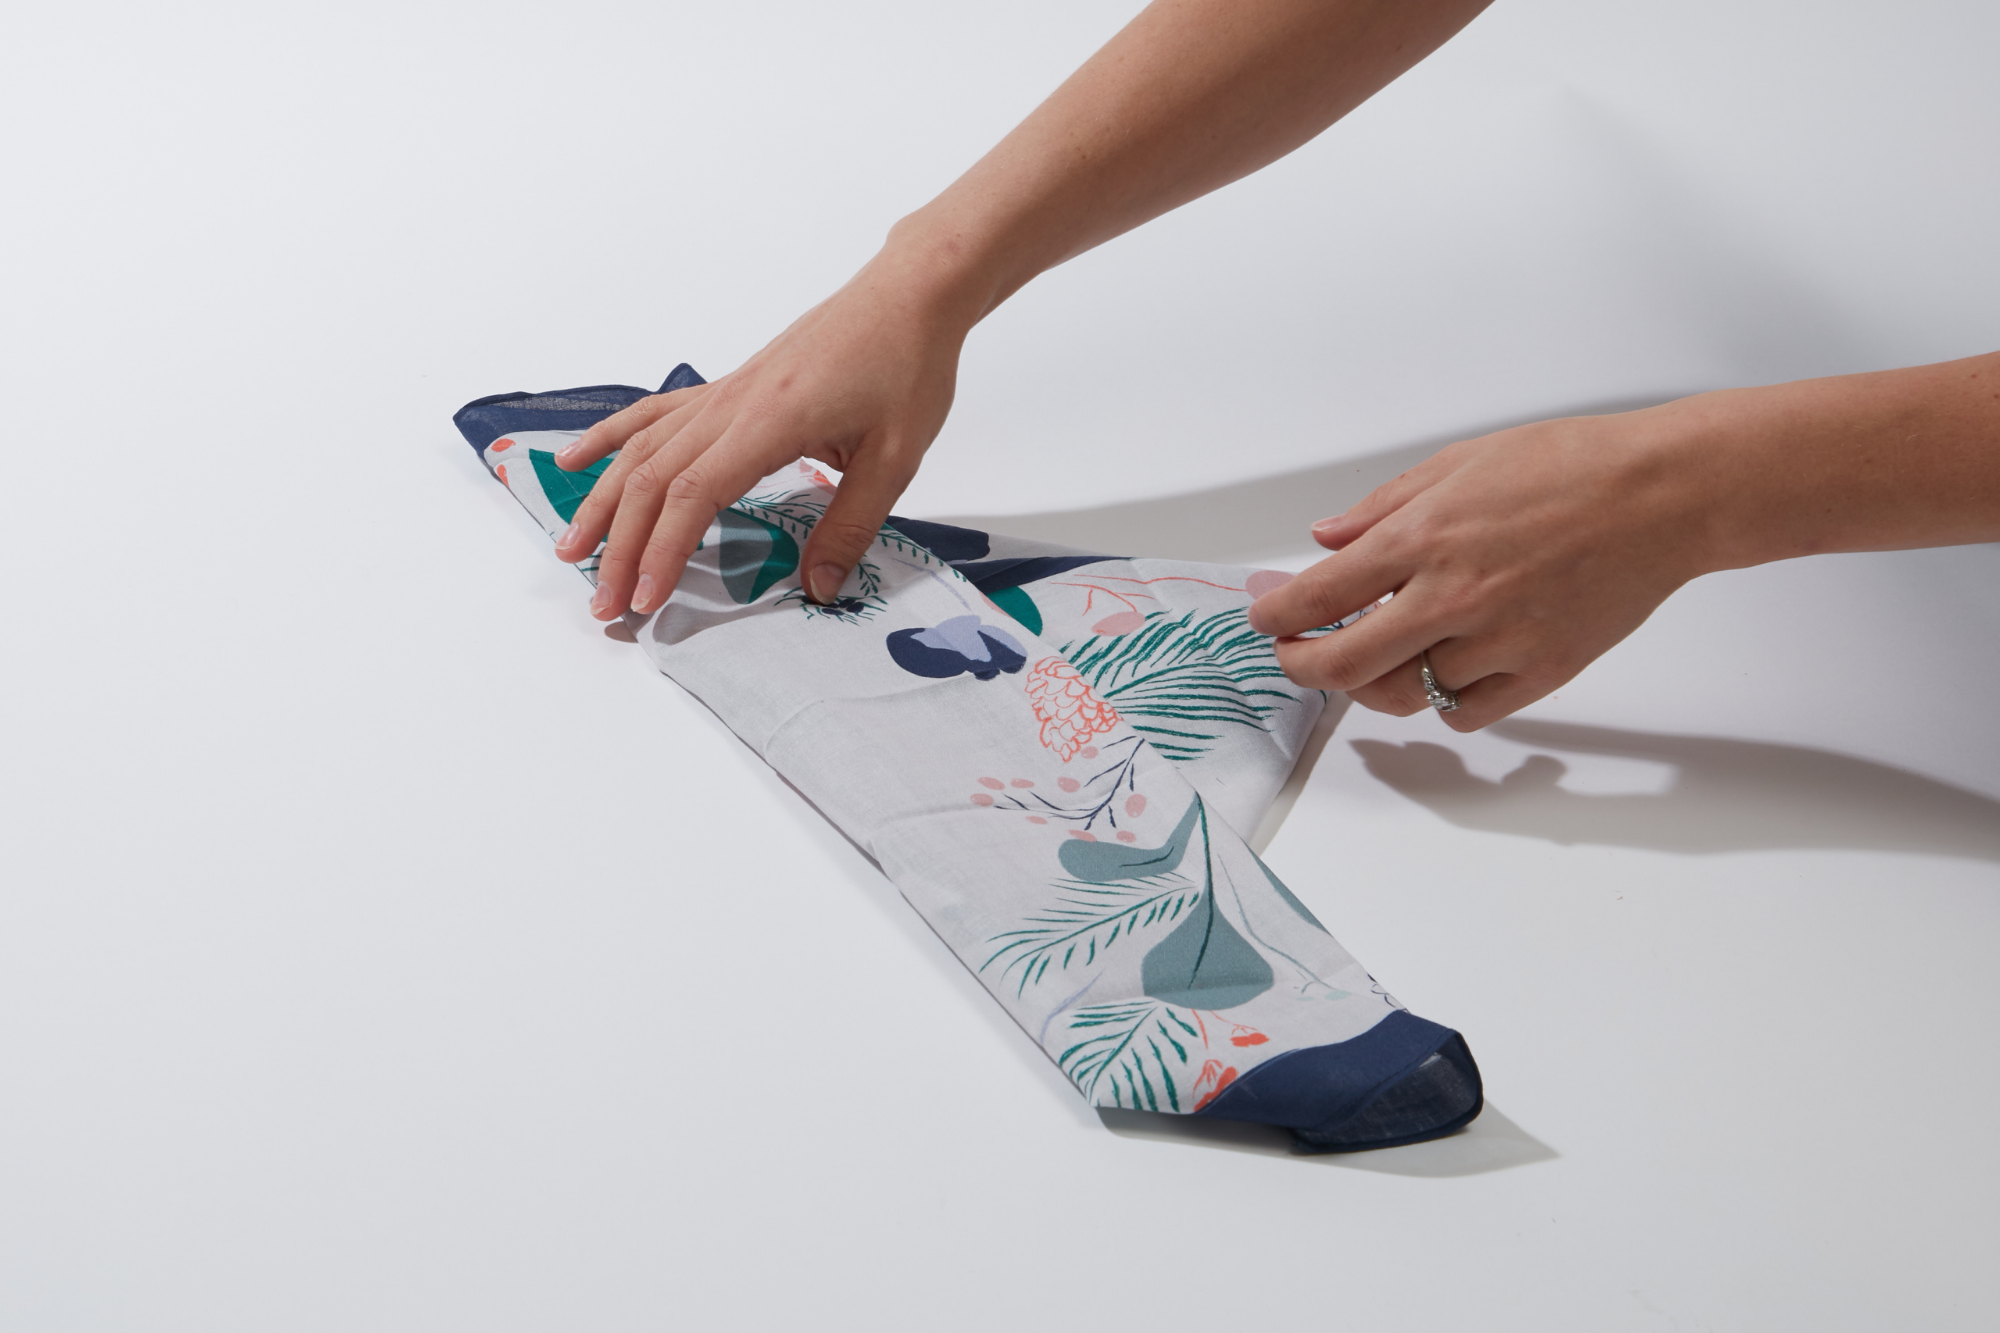 How to Make a Yoga Mat Bag with Furoshiki – Wrappr